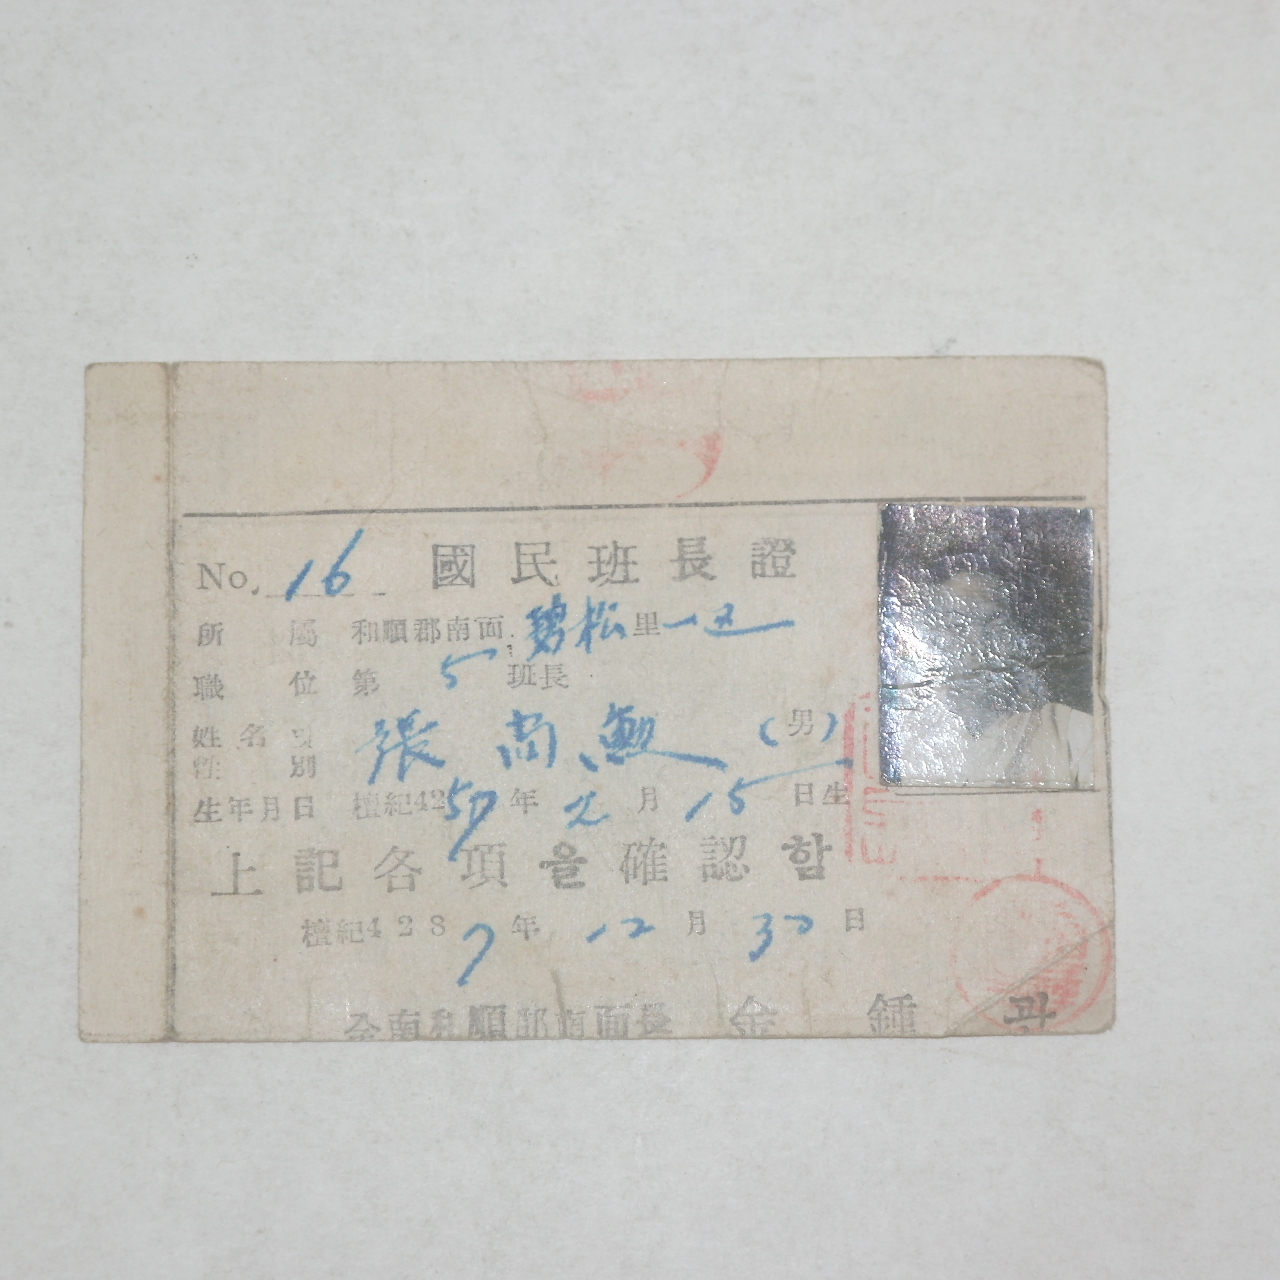 1954년 전남화순 국민반장증(國民班長證)